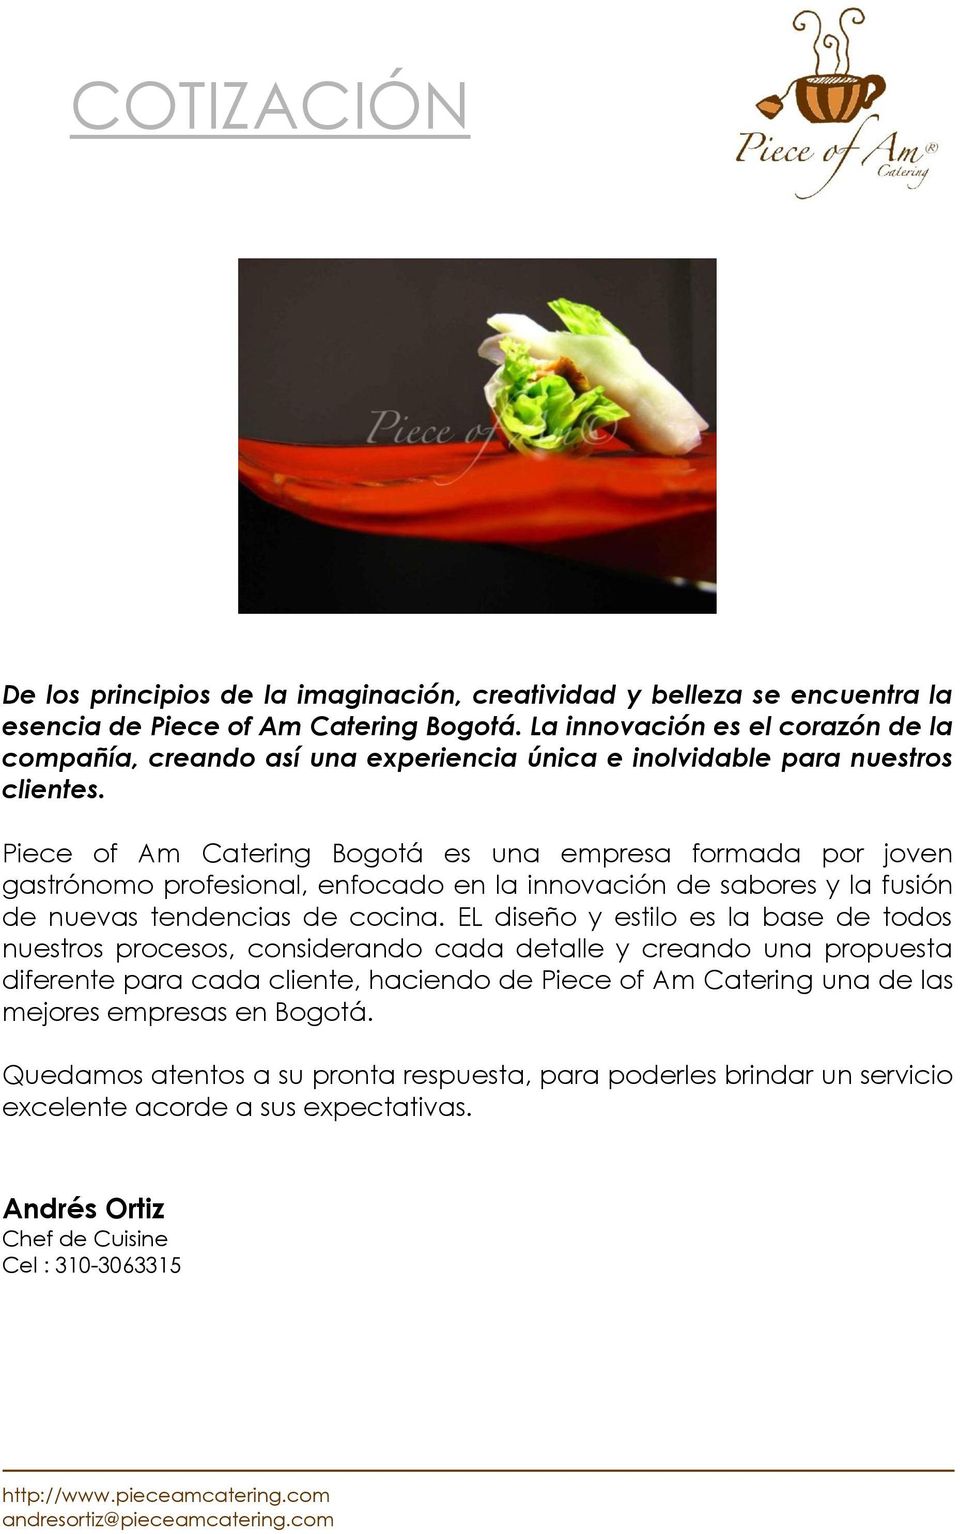 Piece of Am Catering Bogotá es una empresa formada por joven gastrónomo profesional, enfocado en la innovación de sabores y la fusión de nuevas tendencias de cocina.